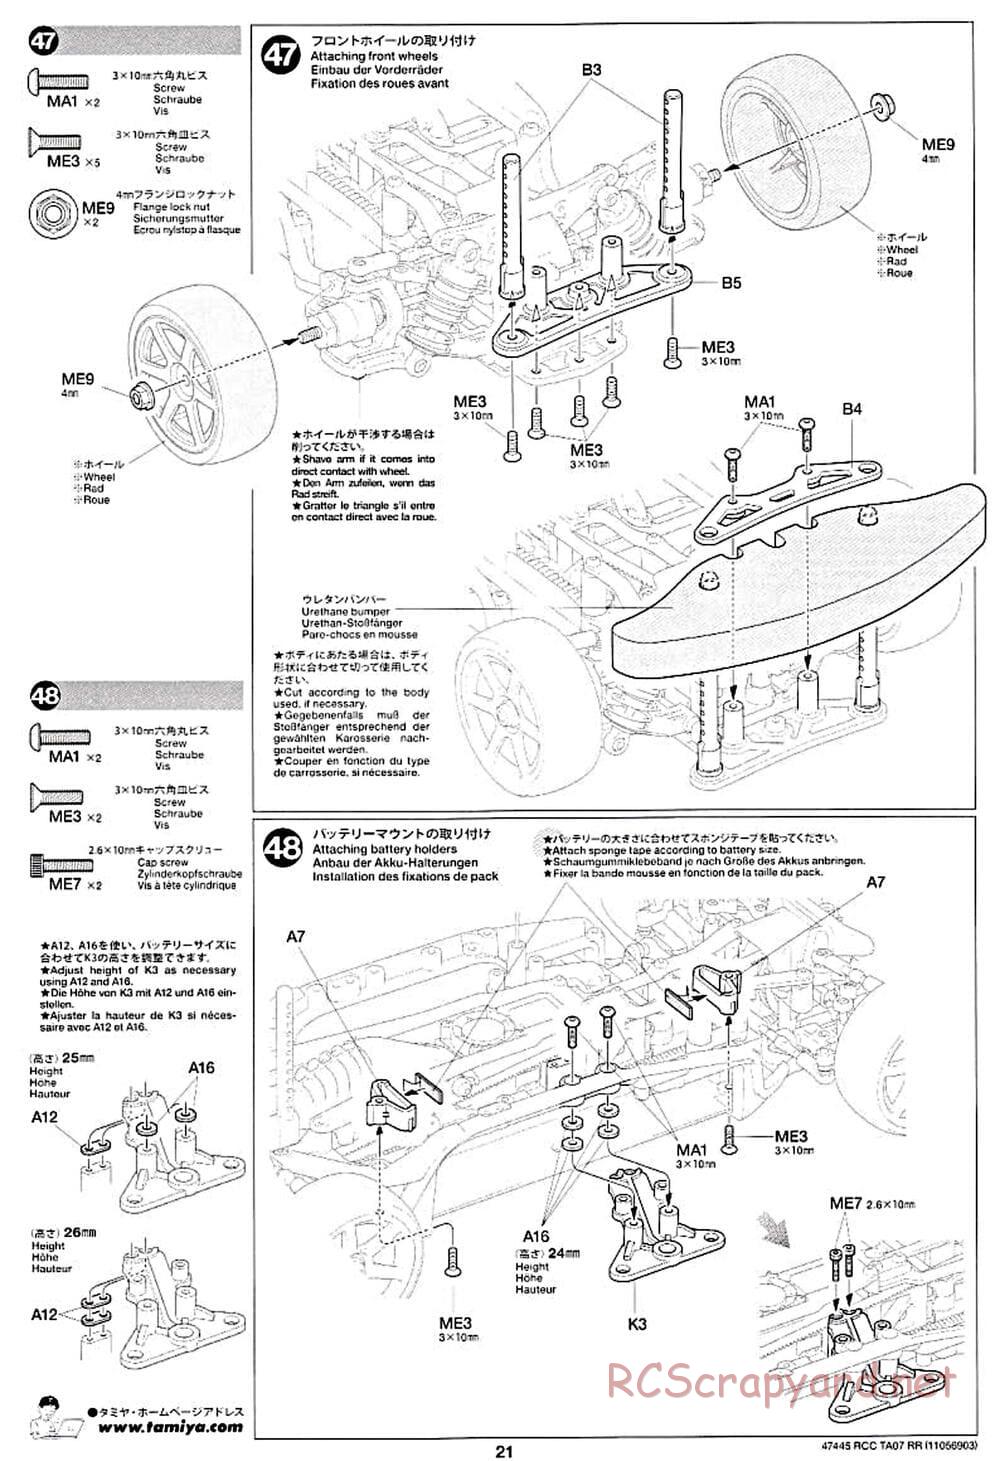 Tamiya - TA07 RR Chassis - Manual - Page 21